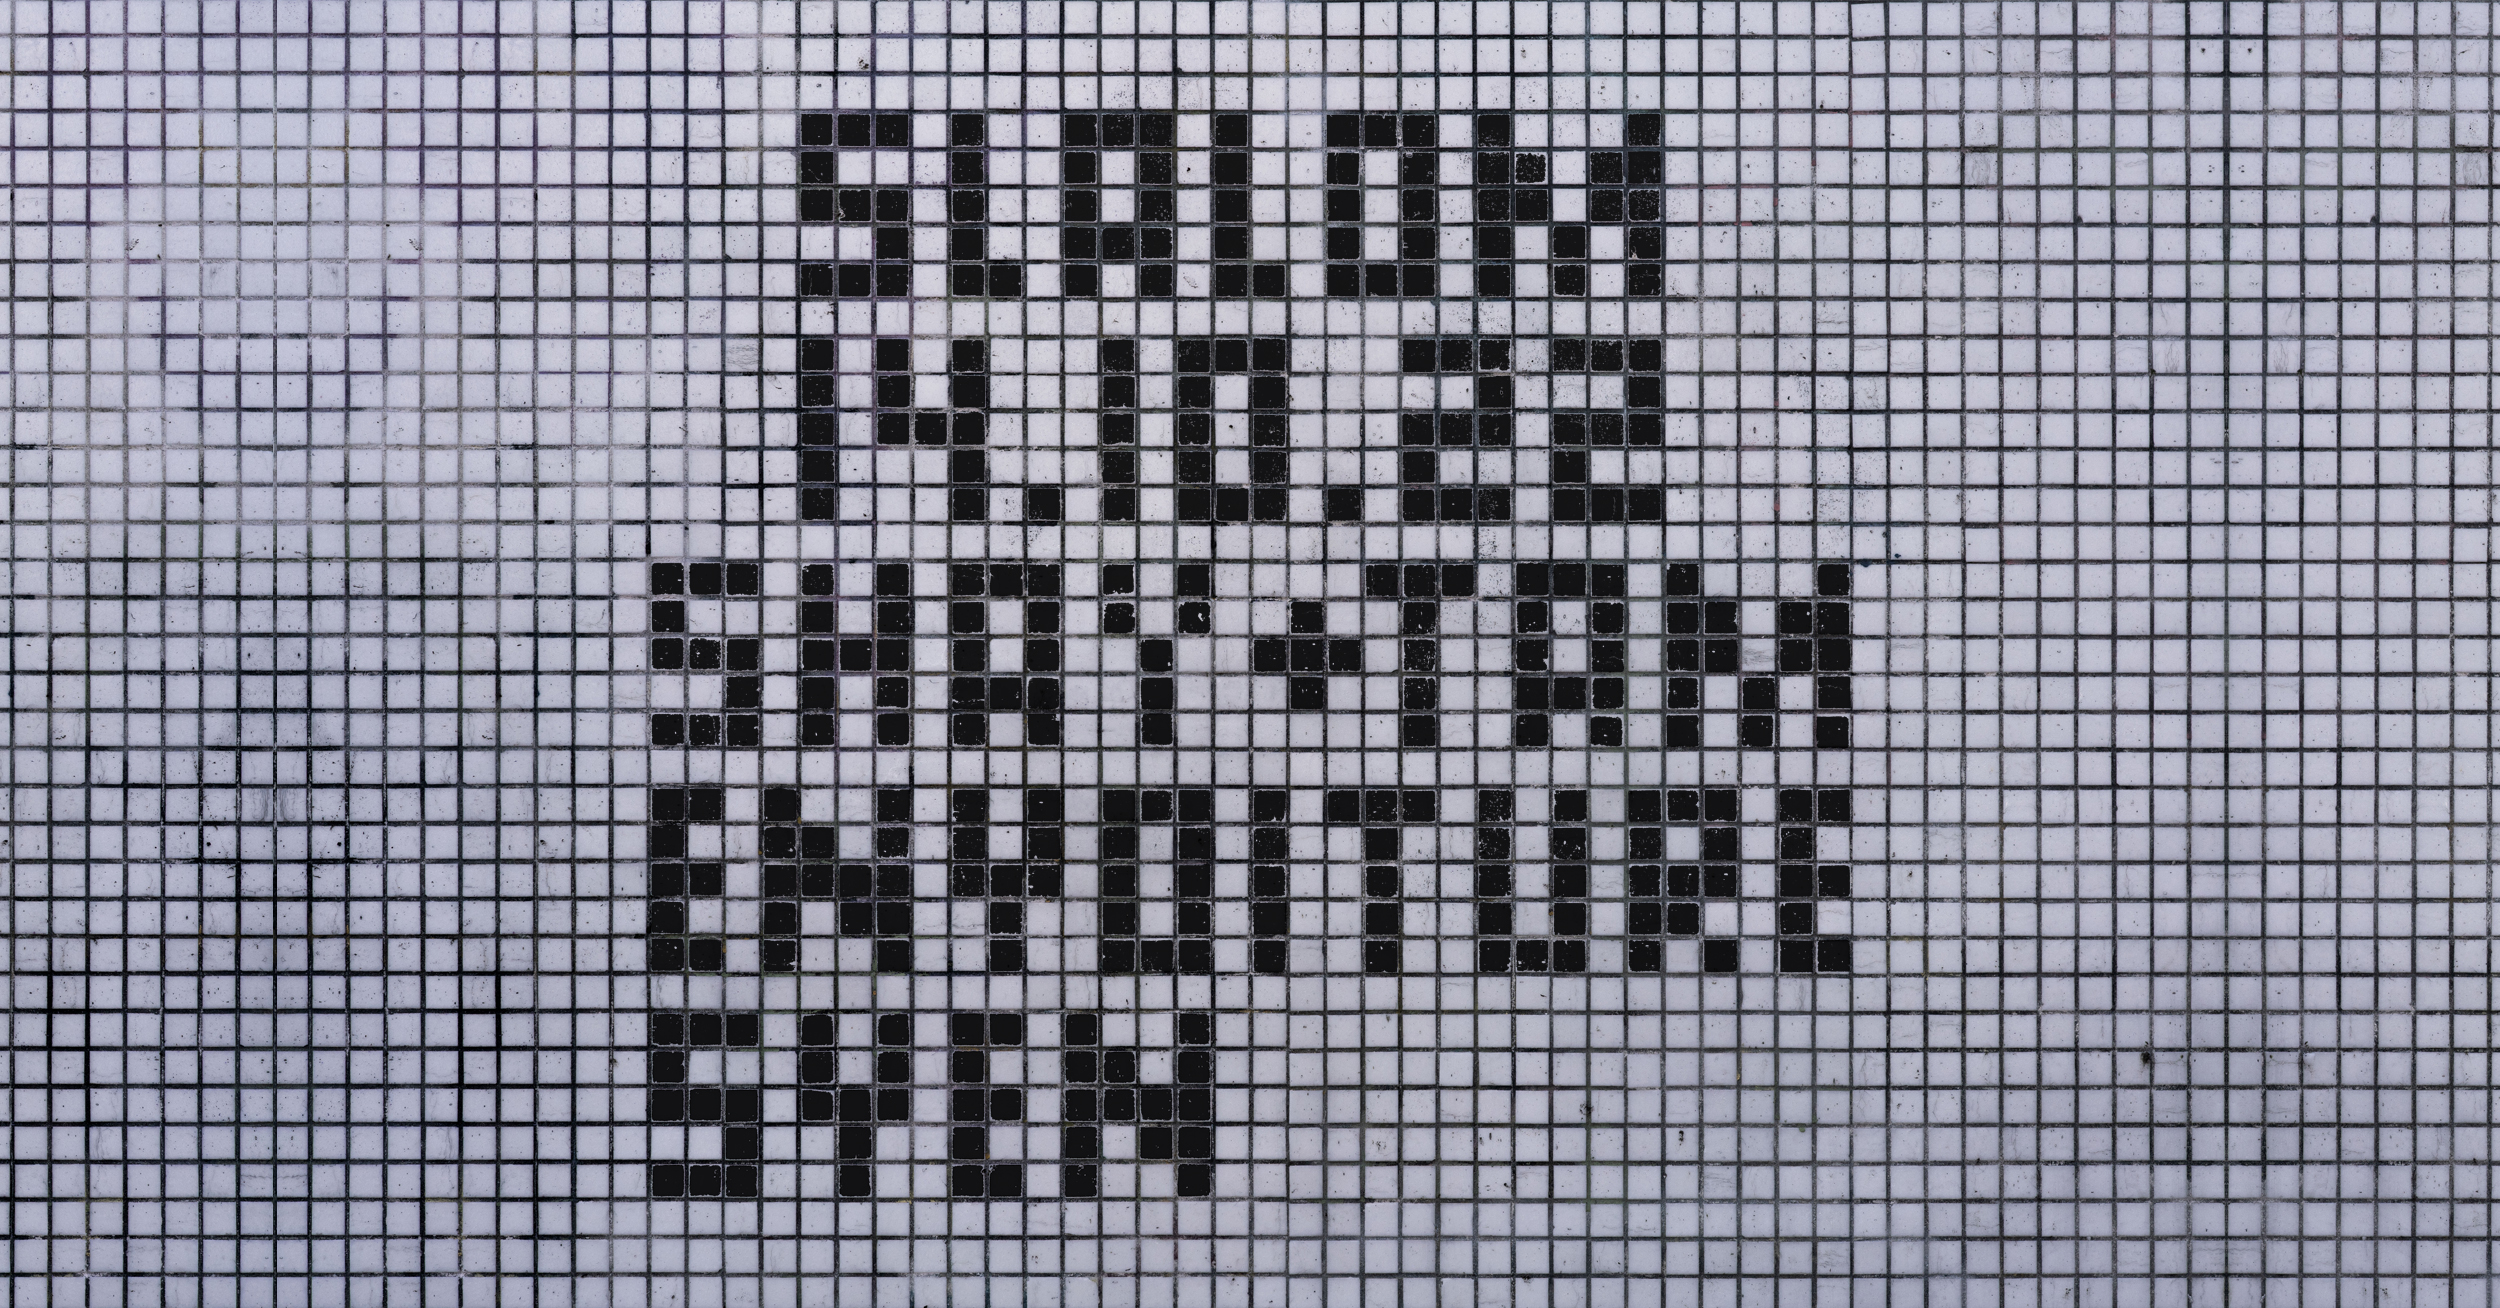 Weisse Kacheln und schwarze Kacheln, die die Wörter: SLALOM 14.10.22 SHAY + TAM ENYOITURE SVEN bilden.